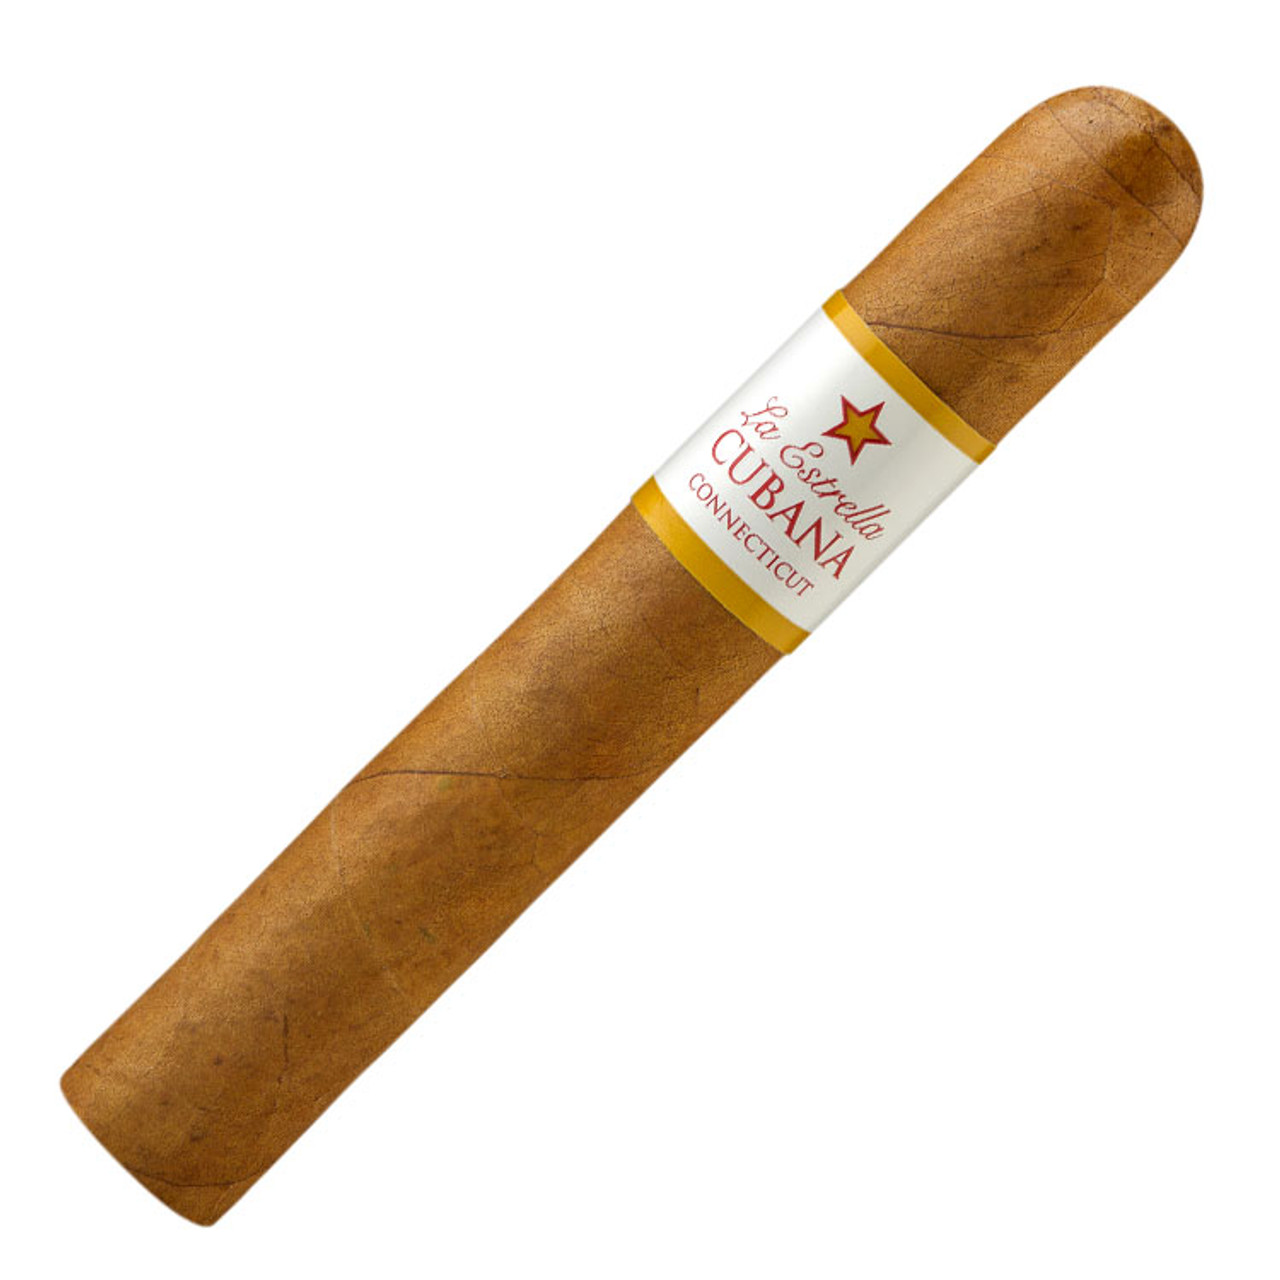 La Estrella Cubana Connecticut Gigante Cigars - 6 x 60 (Box of 20)